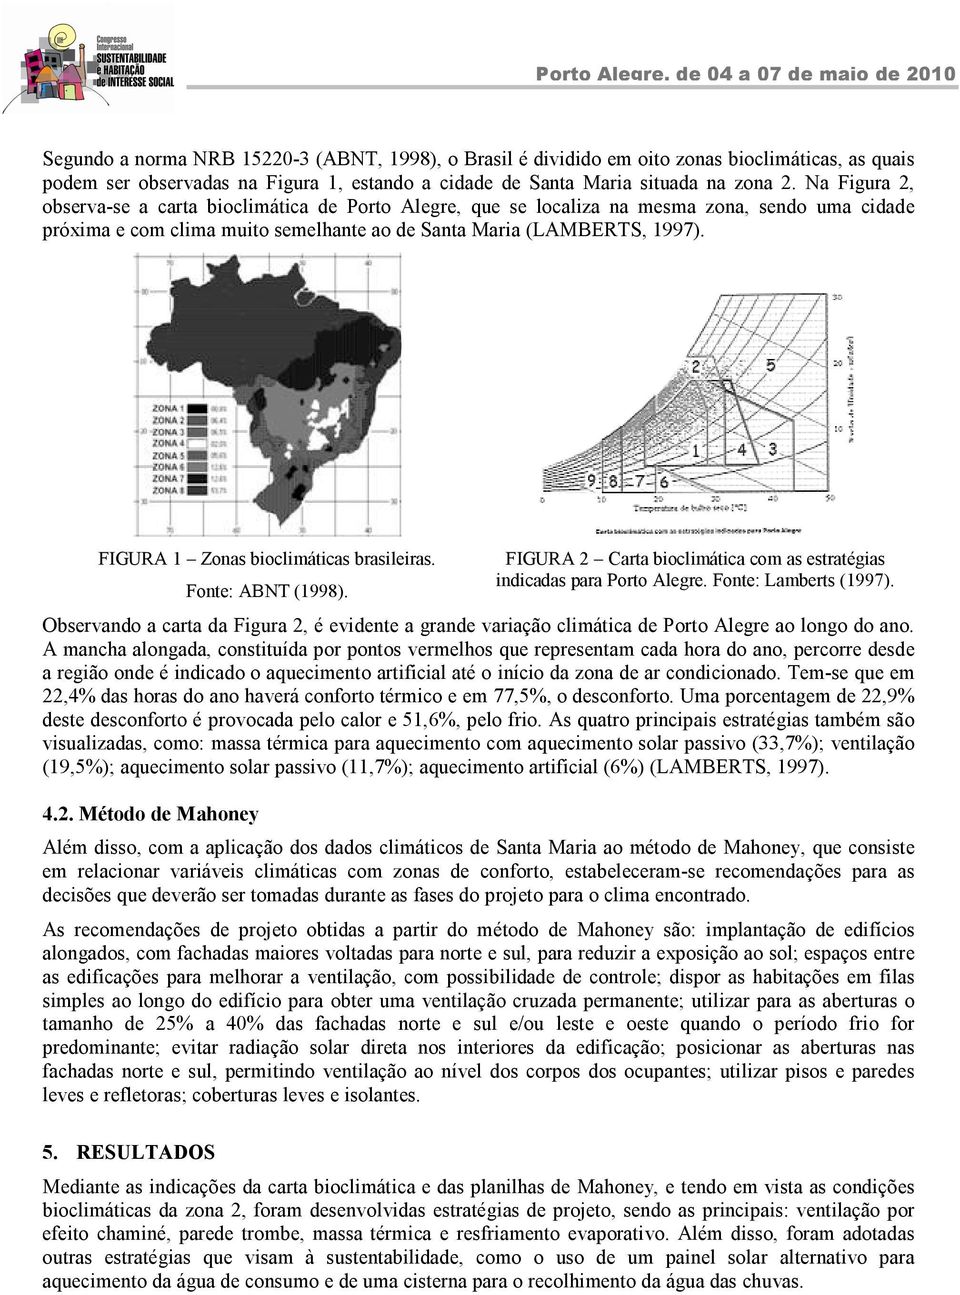 FIGURA 1 Zonas bioclimáticas brasileiras. Fonte: ABNT (1998). FIGURA 2 Carta bioclimática com as estratégias indicadas para Porto Alegre. Fonte: Lamberts (1997).